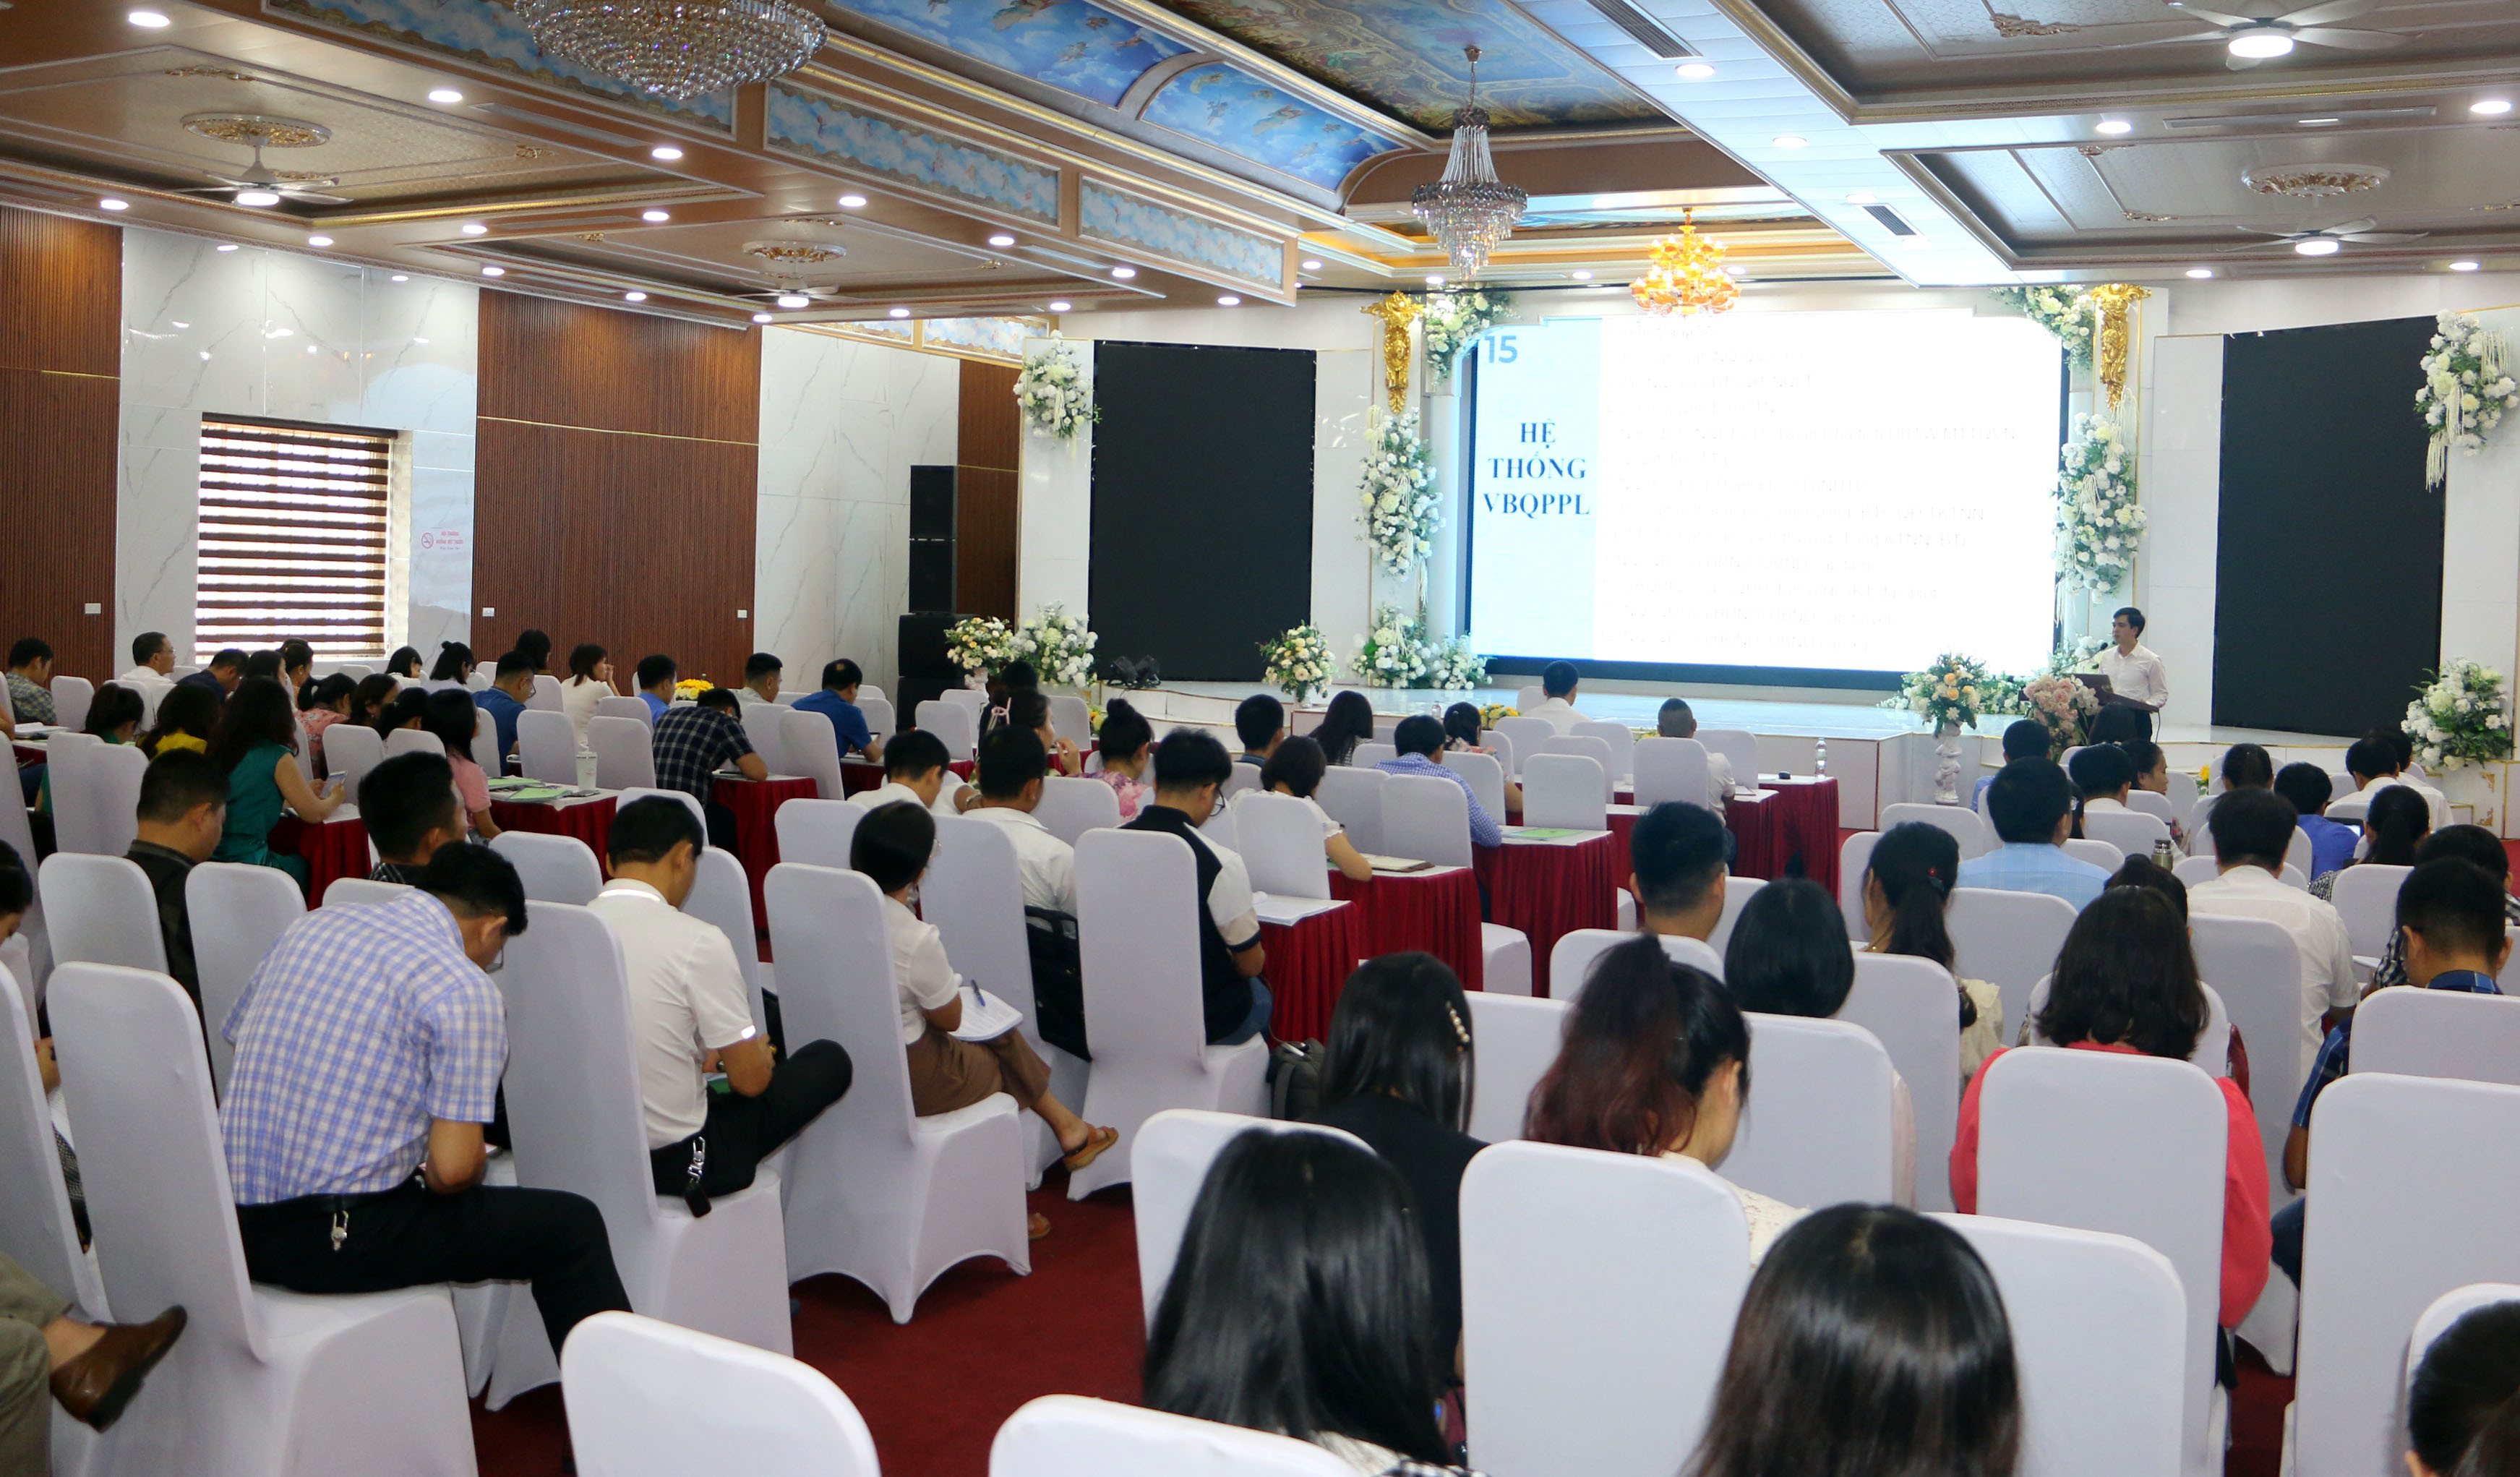 Tham dự Hội nghị gồm có gần 120 đại biểu đến từ các phòng, ban chuyên môn của của HĐND, UBND cấp tỉnh, cấp huyện. Ảnh: An Quỳnh.